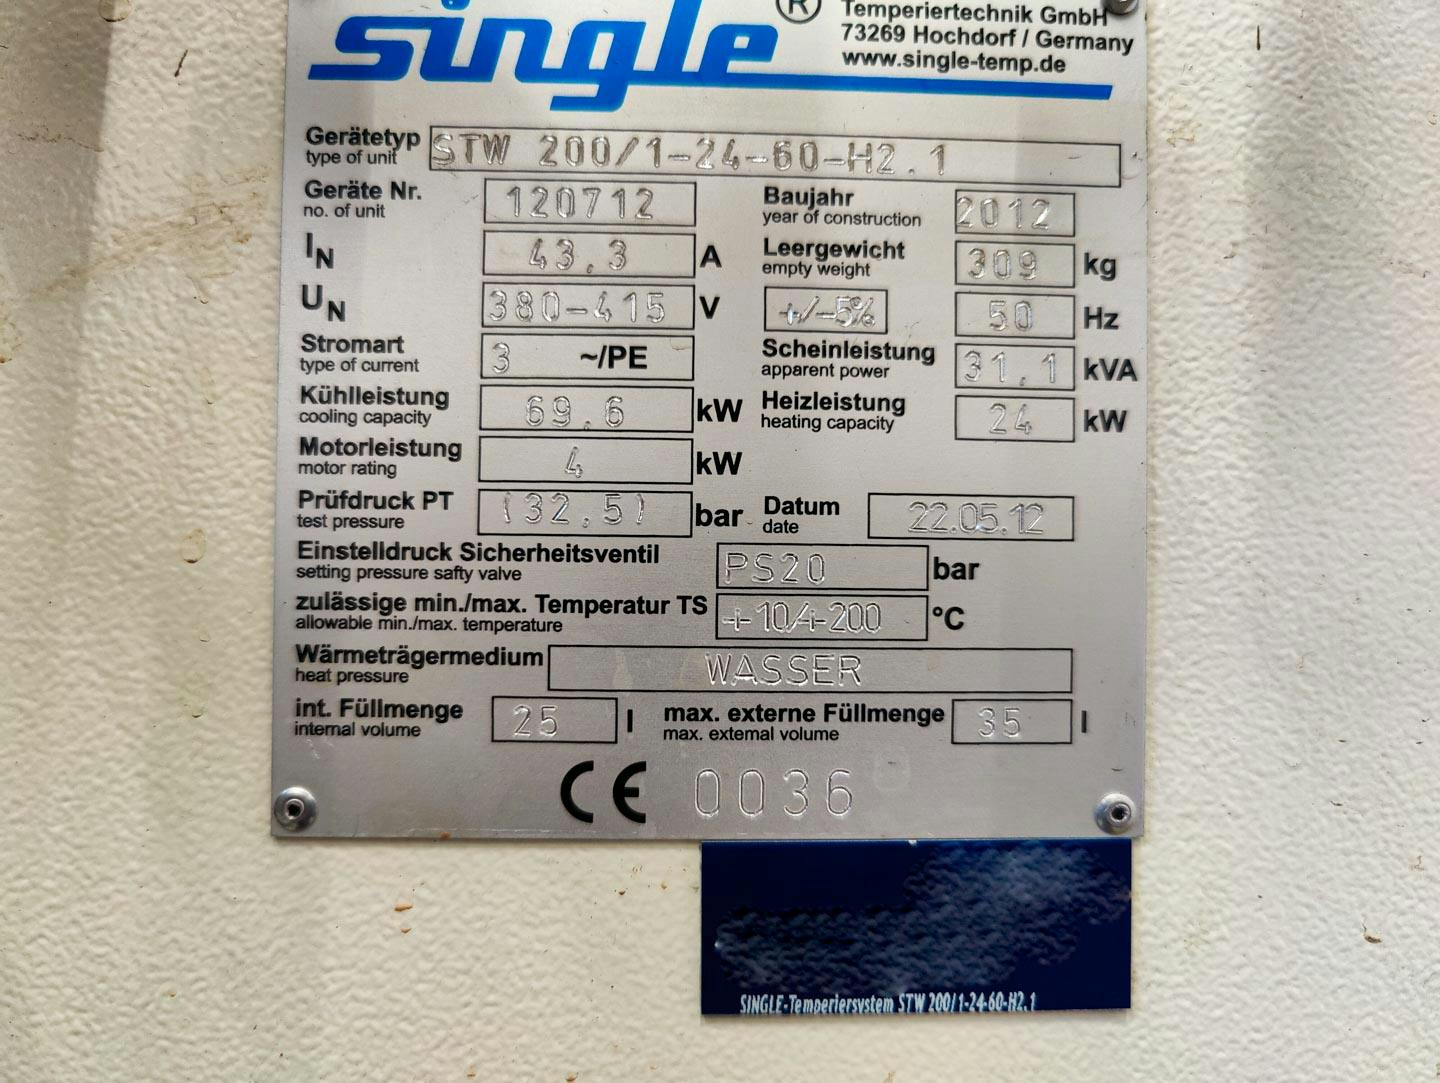 Single Temperiertechnik STW 200/1-24.60-H2.1 - Temperiergerät - image 7